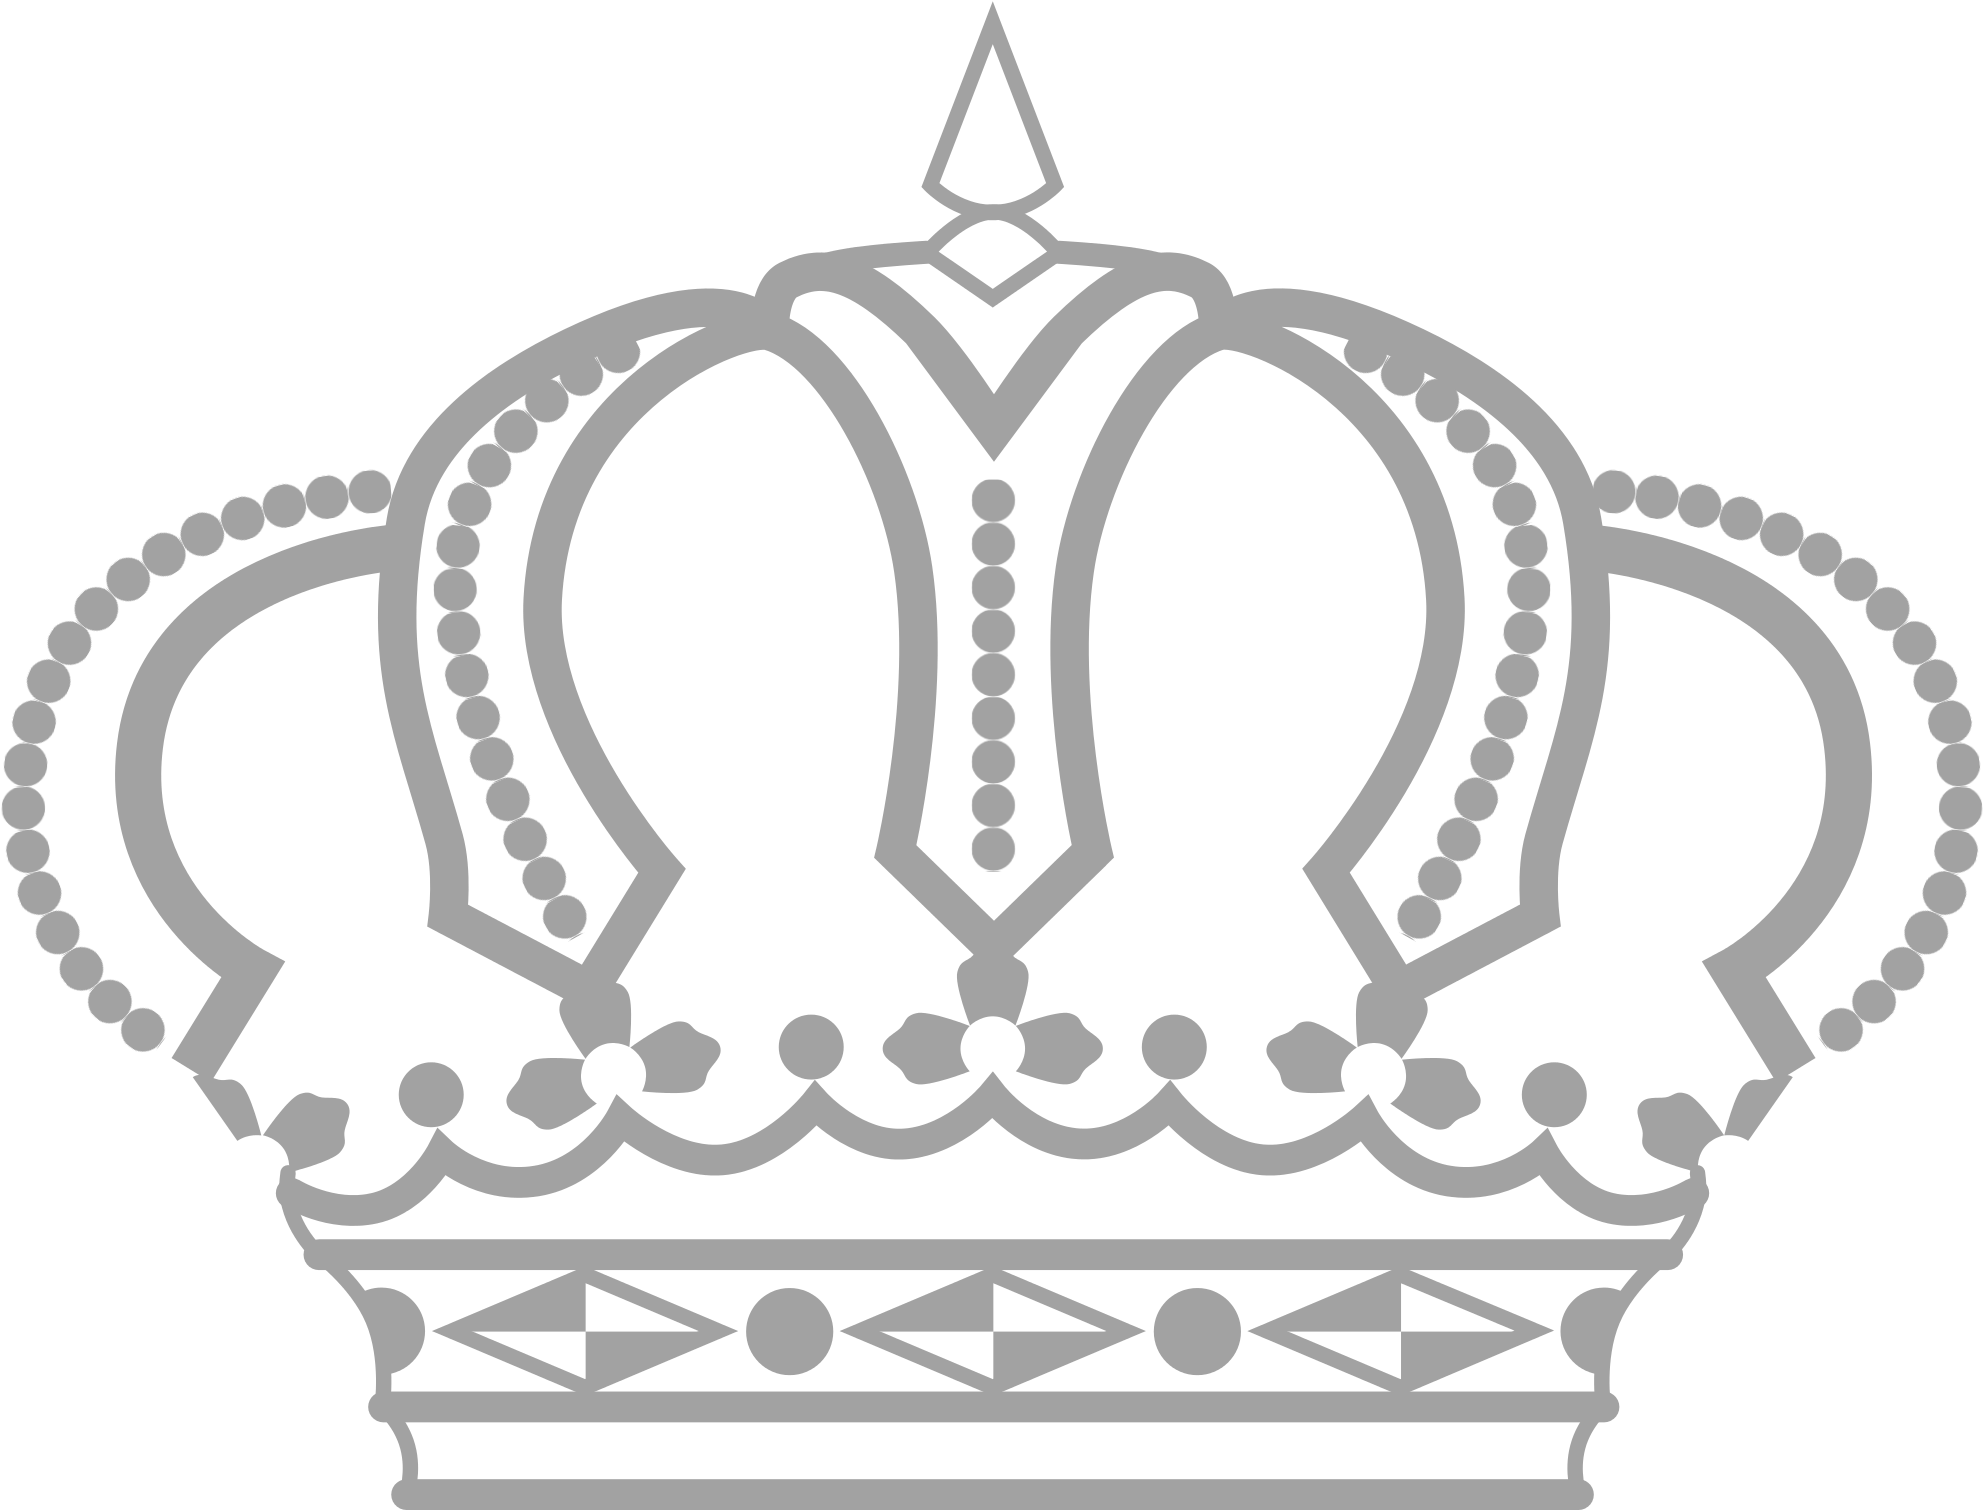 Королевский принц корона PNG изображения фон